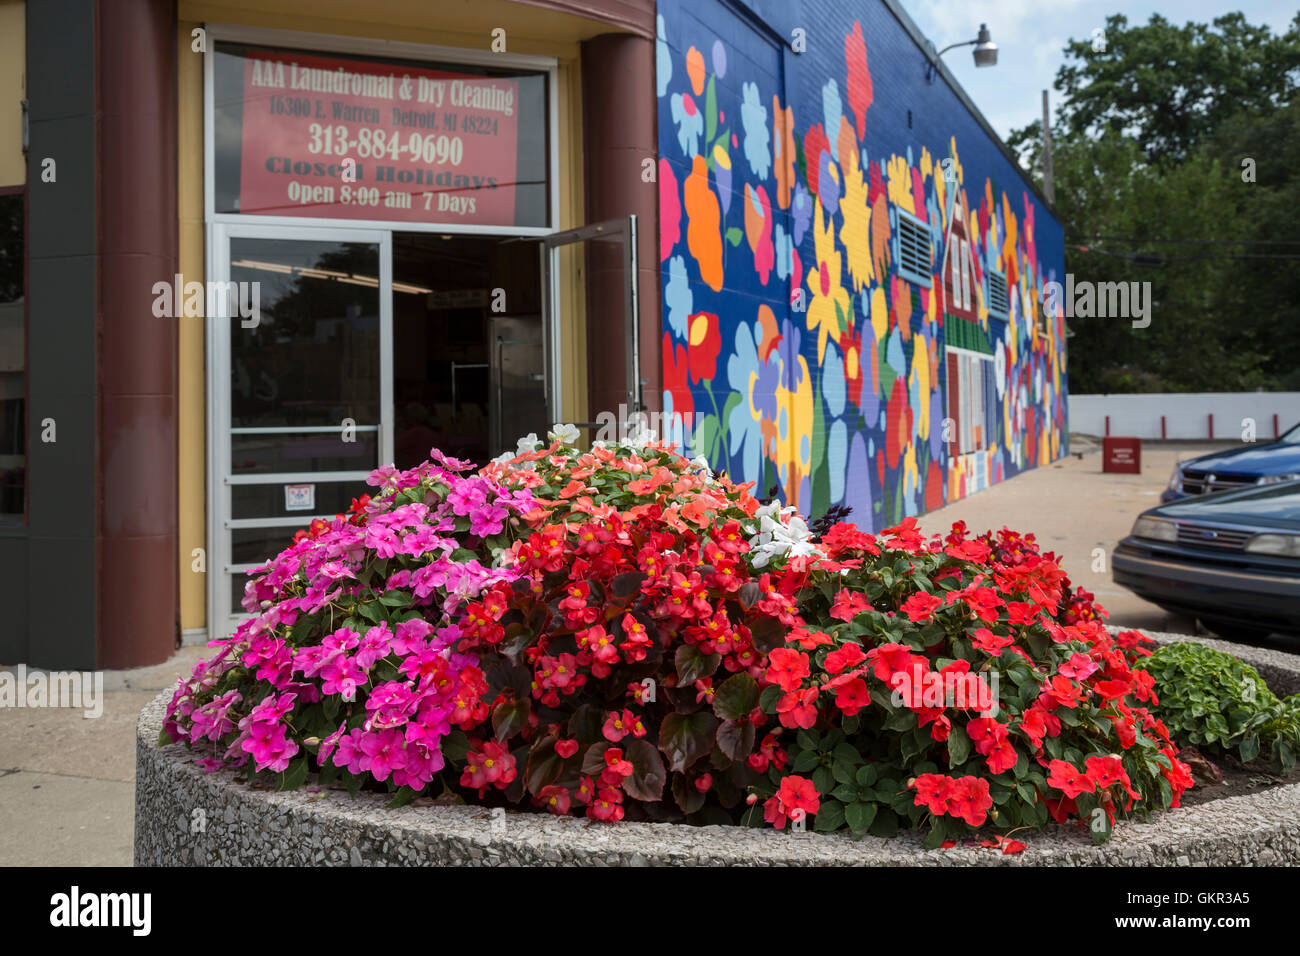 Detroit, Michigan - Fiori in una piantatrice sulla città e sul suo lato orientale di fronte illustrazioni di fiori su una parete. Foto Stock